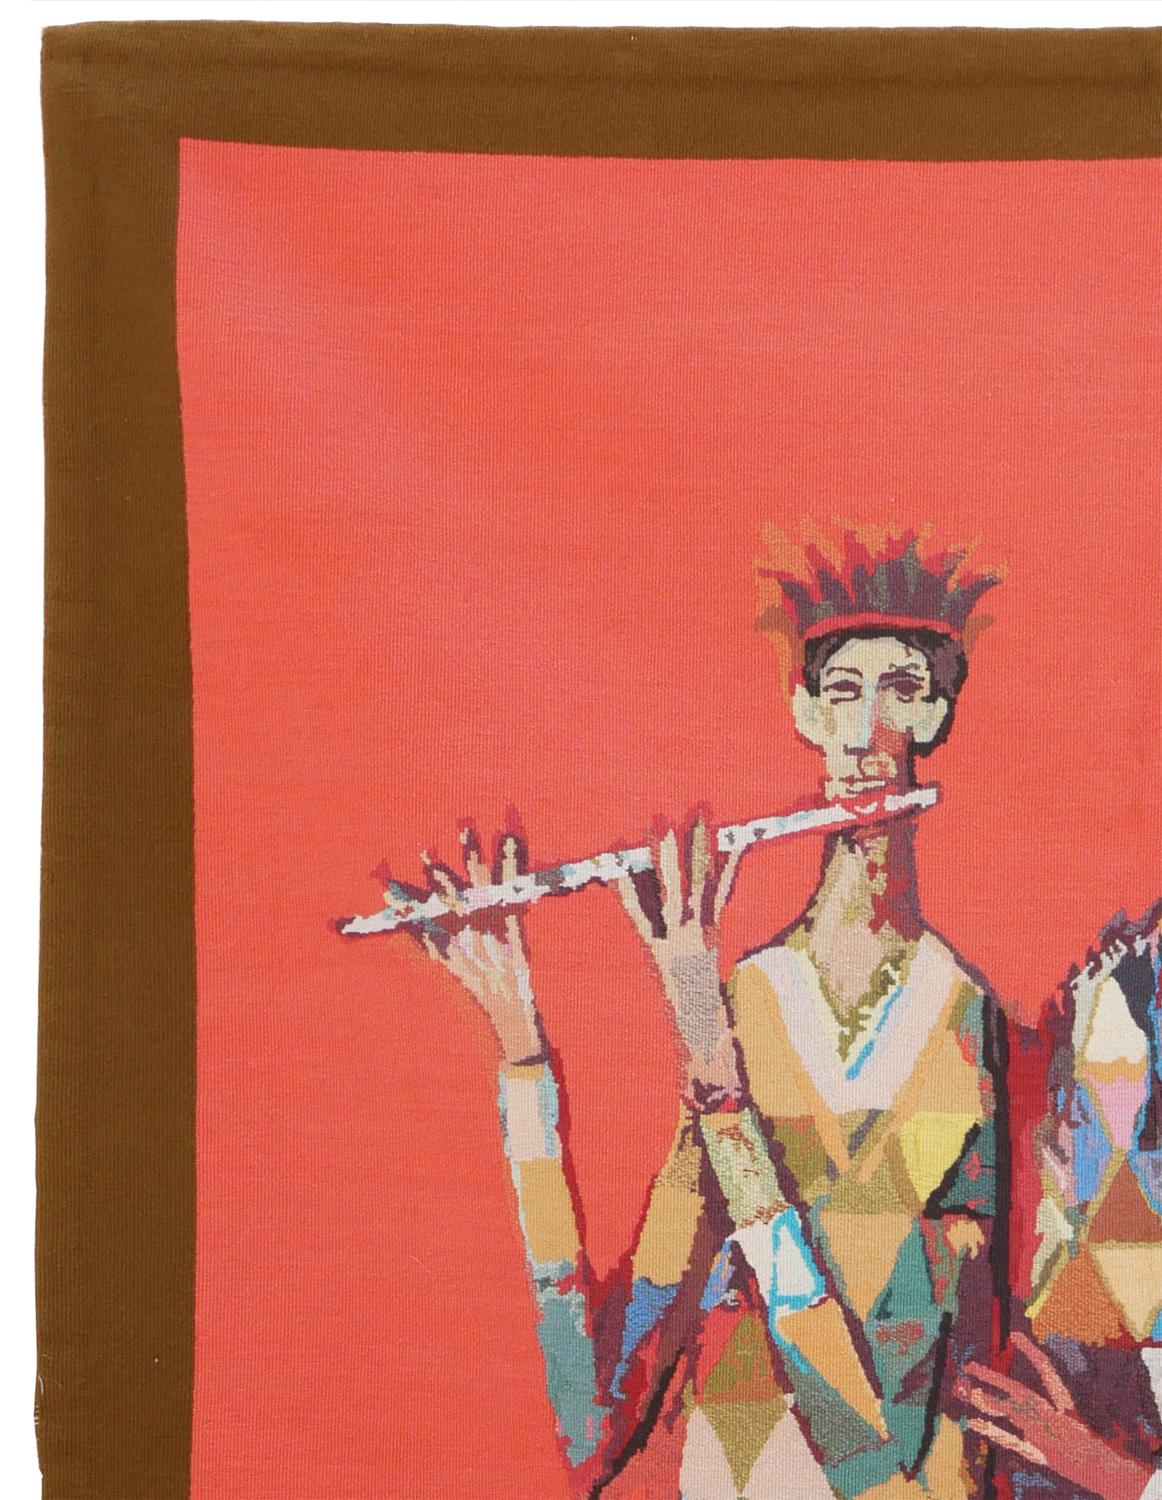 Tapisserie abstraite figurative aux tons chauds de l'artiste David Artistics, basé à Houston. L'œuvre présente trois personnages centraux, l'un avec une flûte, l'autre avec un foulard et une femme portant un chapeau, autant d'images classiques que